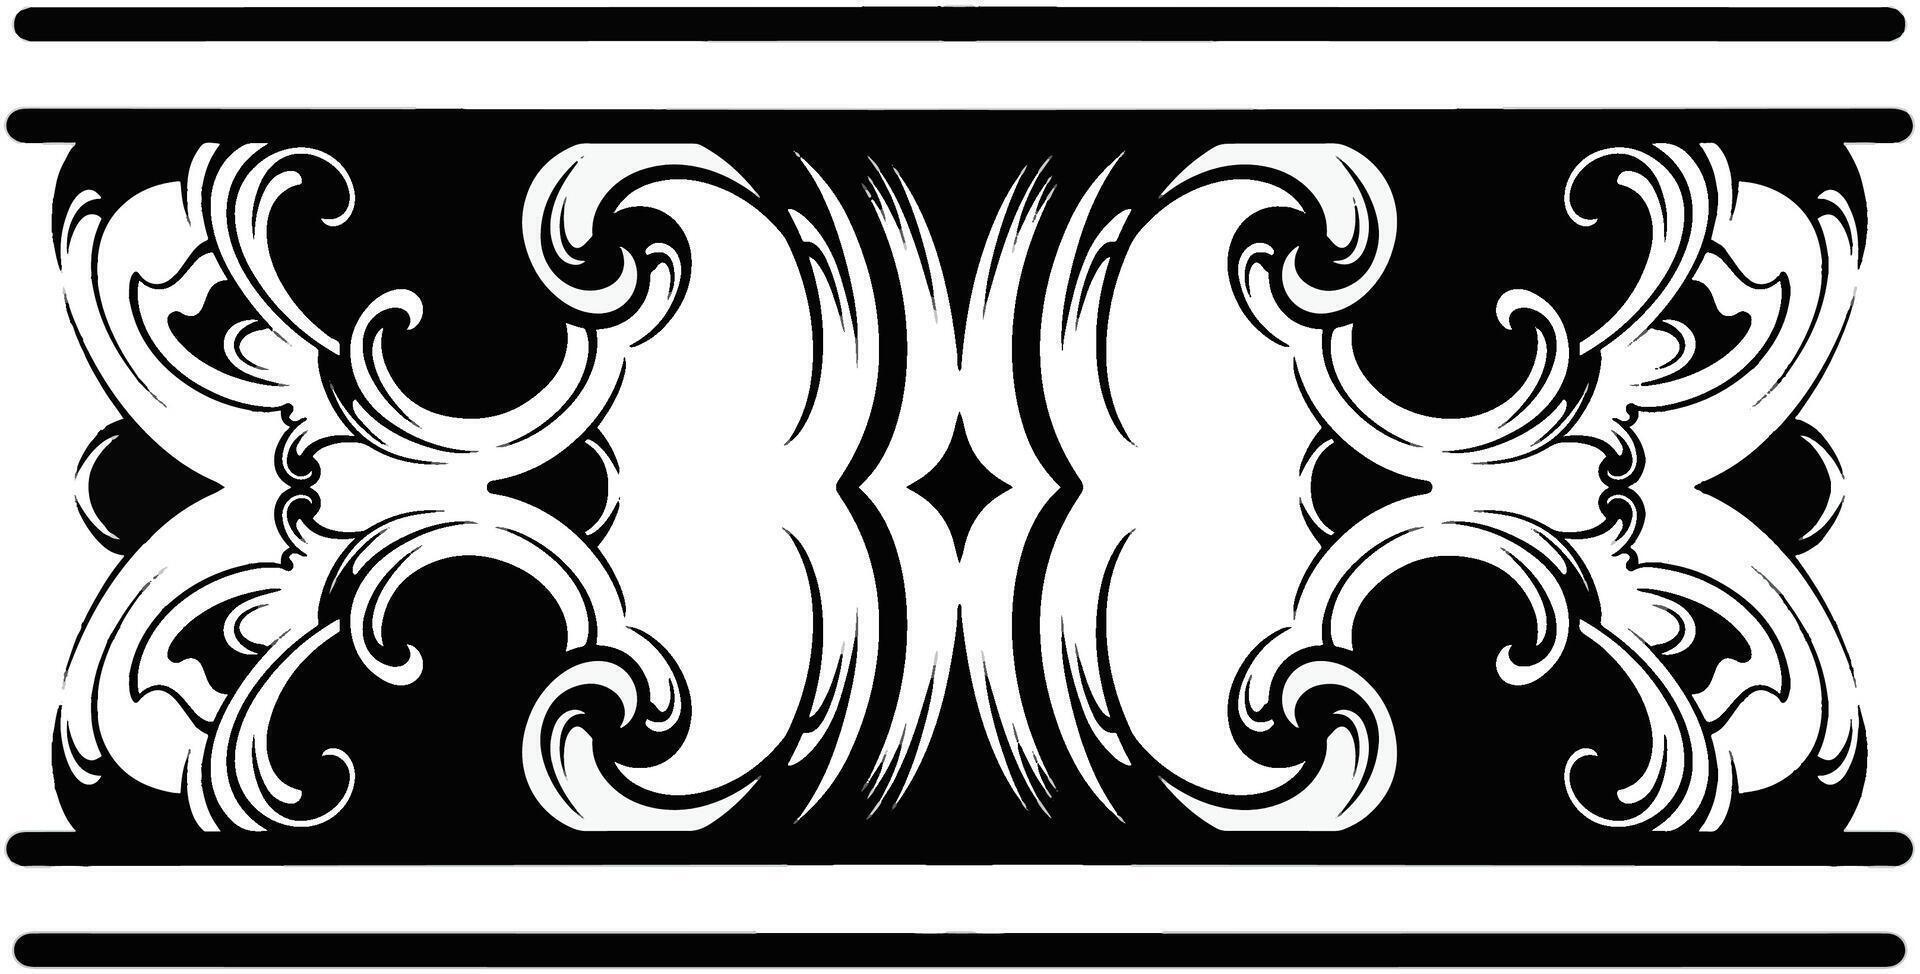 diseño de mandala polinesio tribal, ornamento geométrico del vector del patrón del estilo del tatuaje hawaiano en blanco y negro